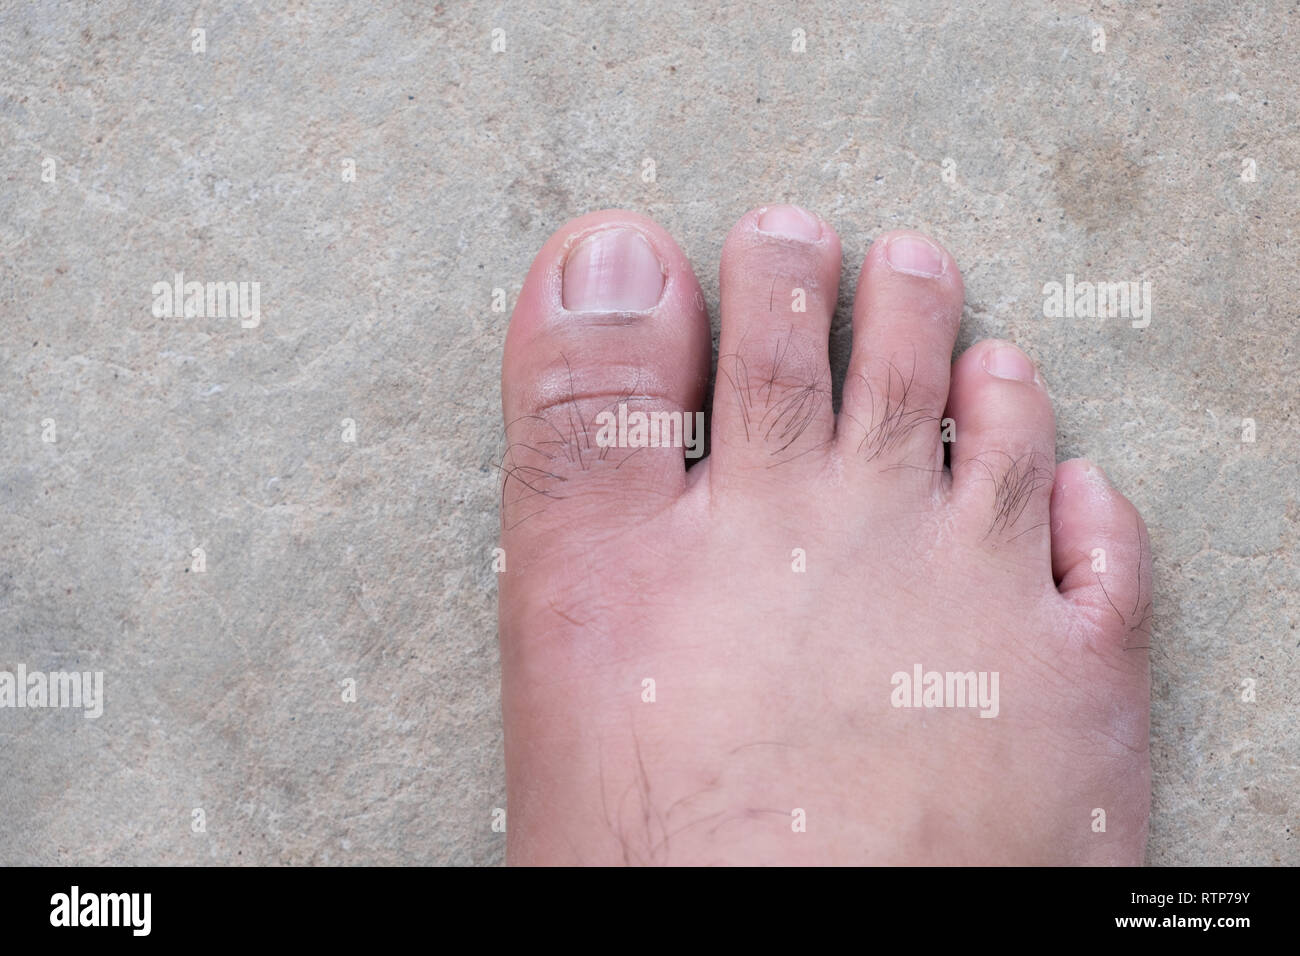 Giro in piedi o piede piatto. Salute & cura dei piedi, Closeup incrinato talloni e vene varicose. Foto Stock